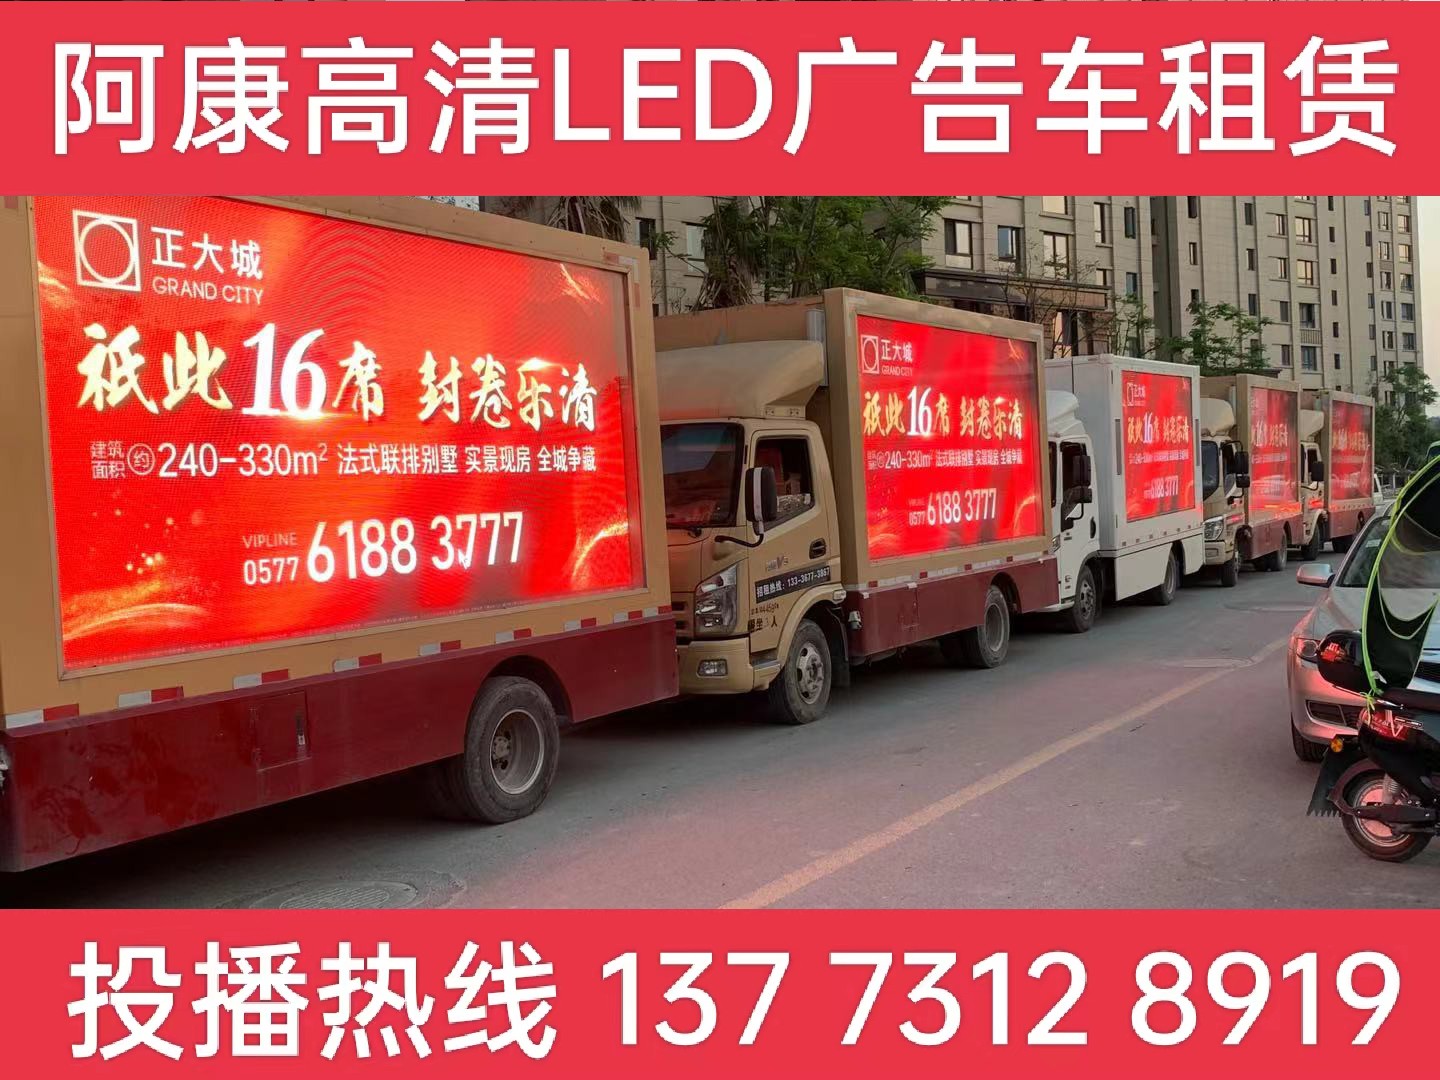 金湖县LED广告车出租